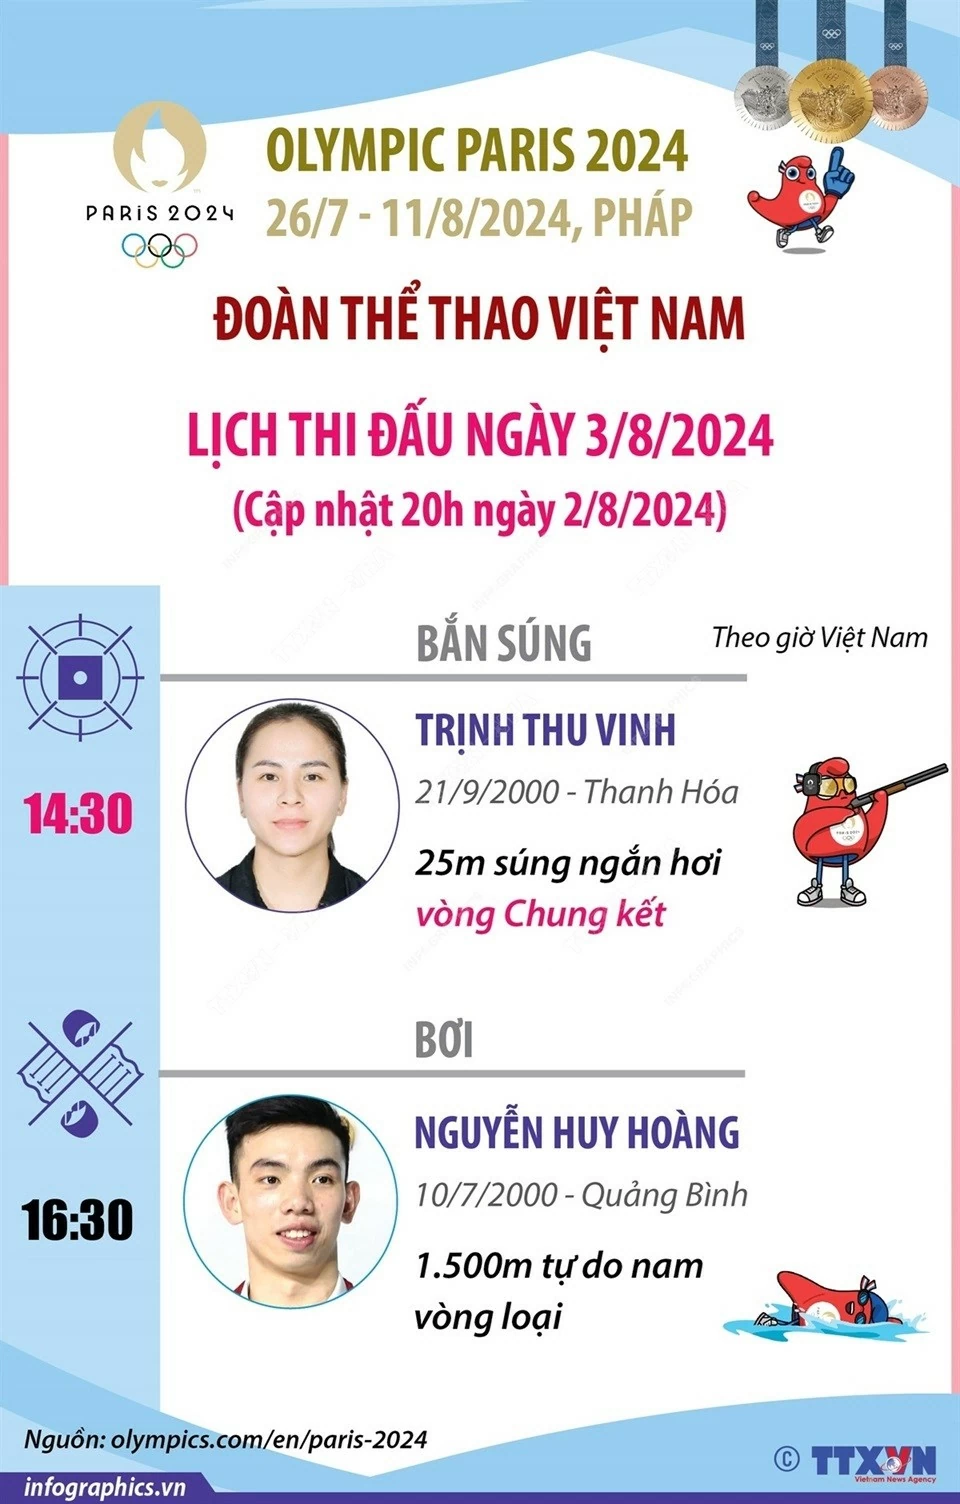 Lịch thi đấu Olympic Paris 2024 ngày 3/8 của Đoàn thể thao Việt Nam